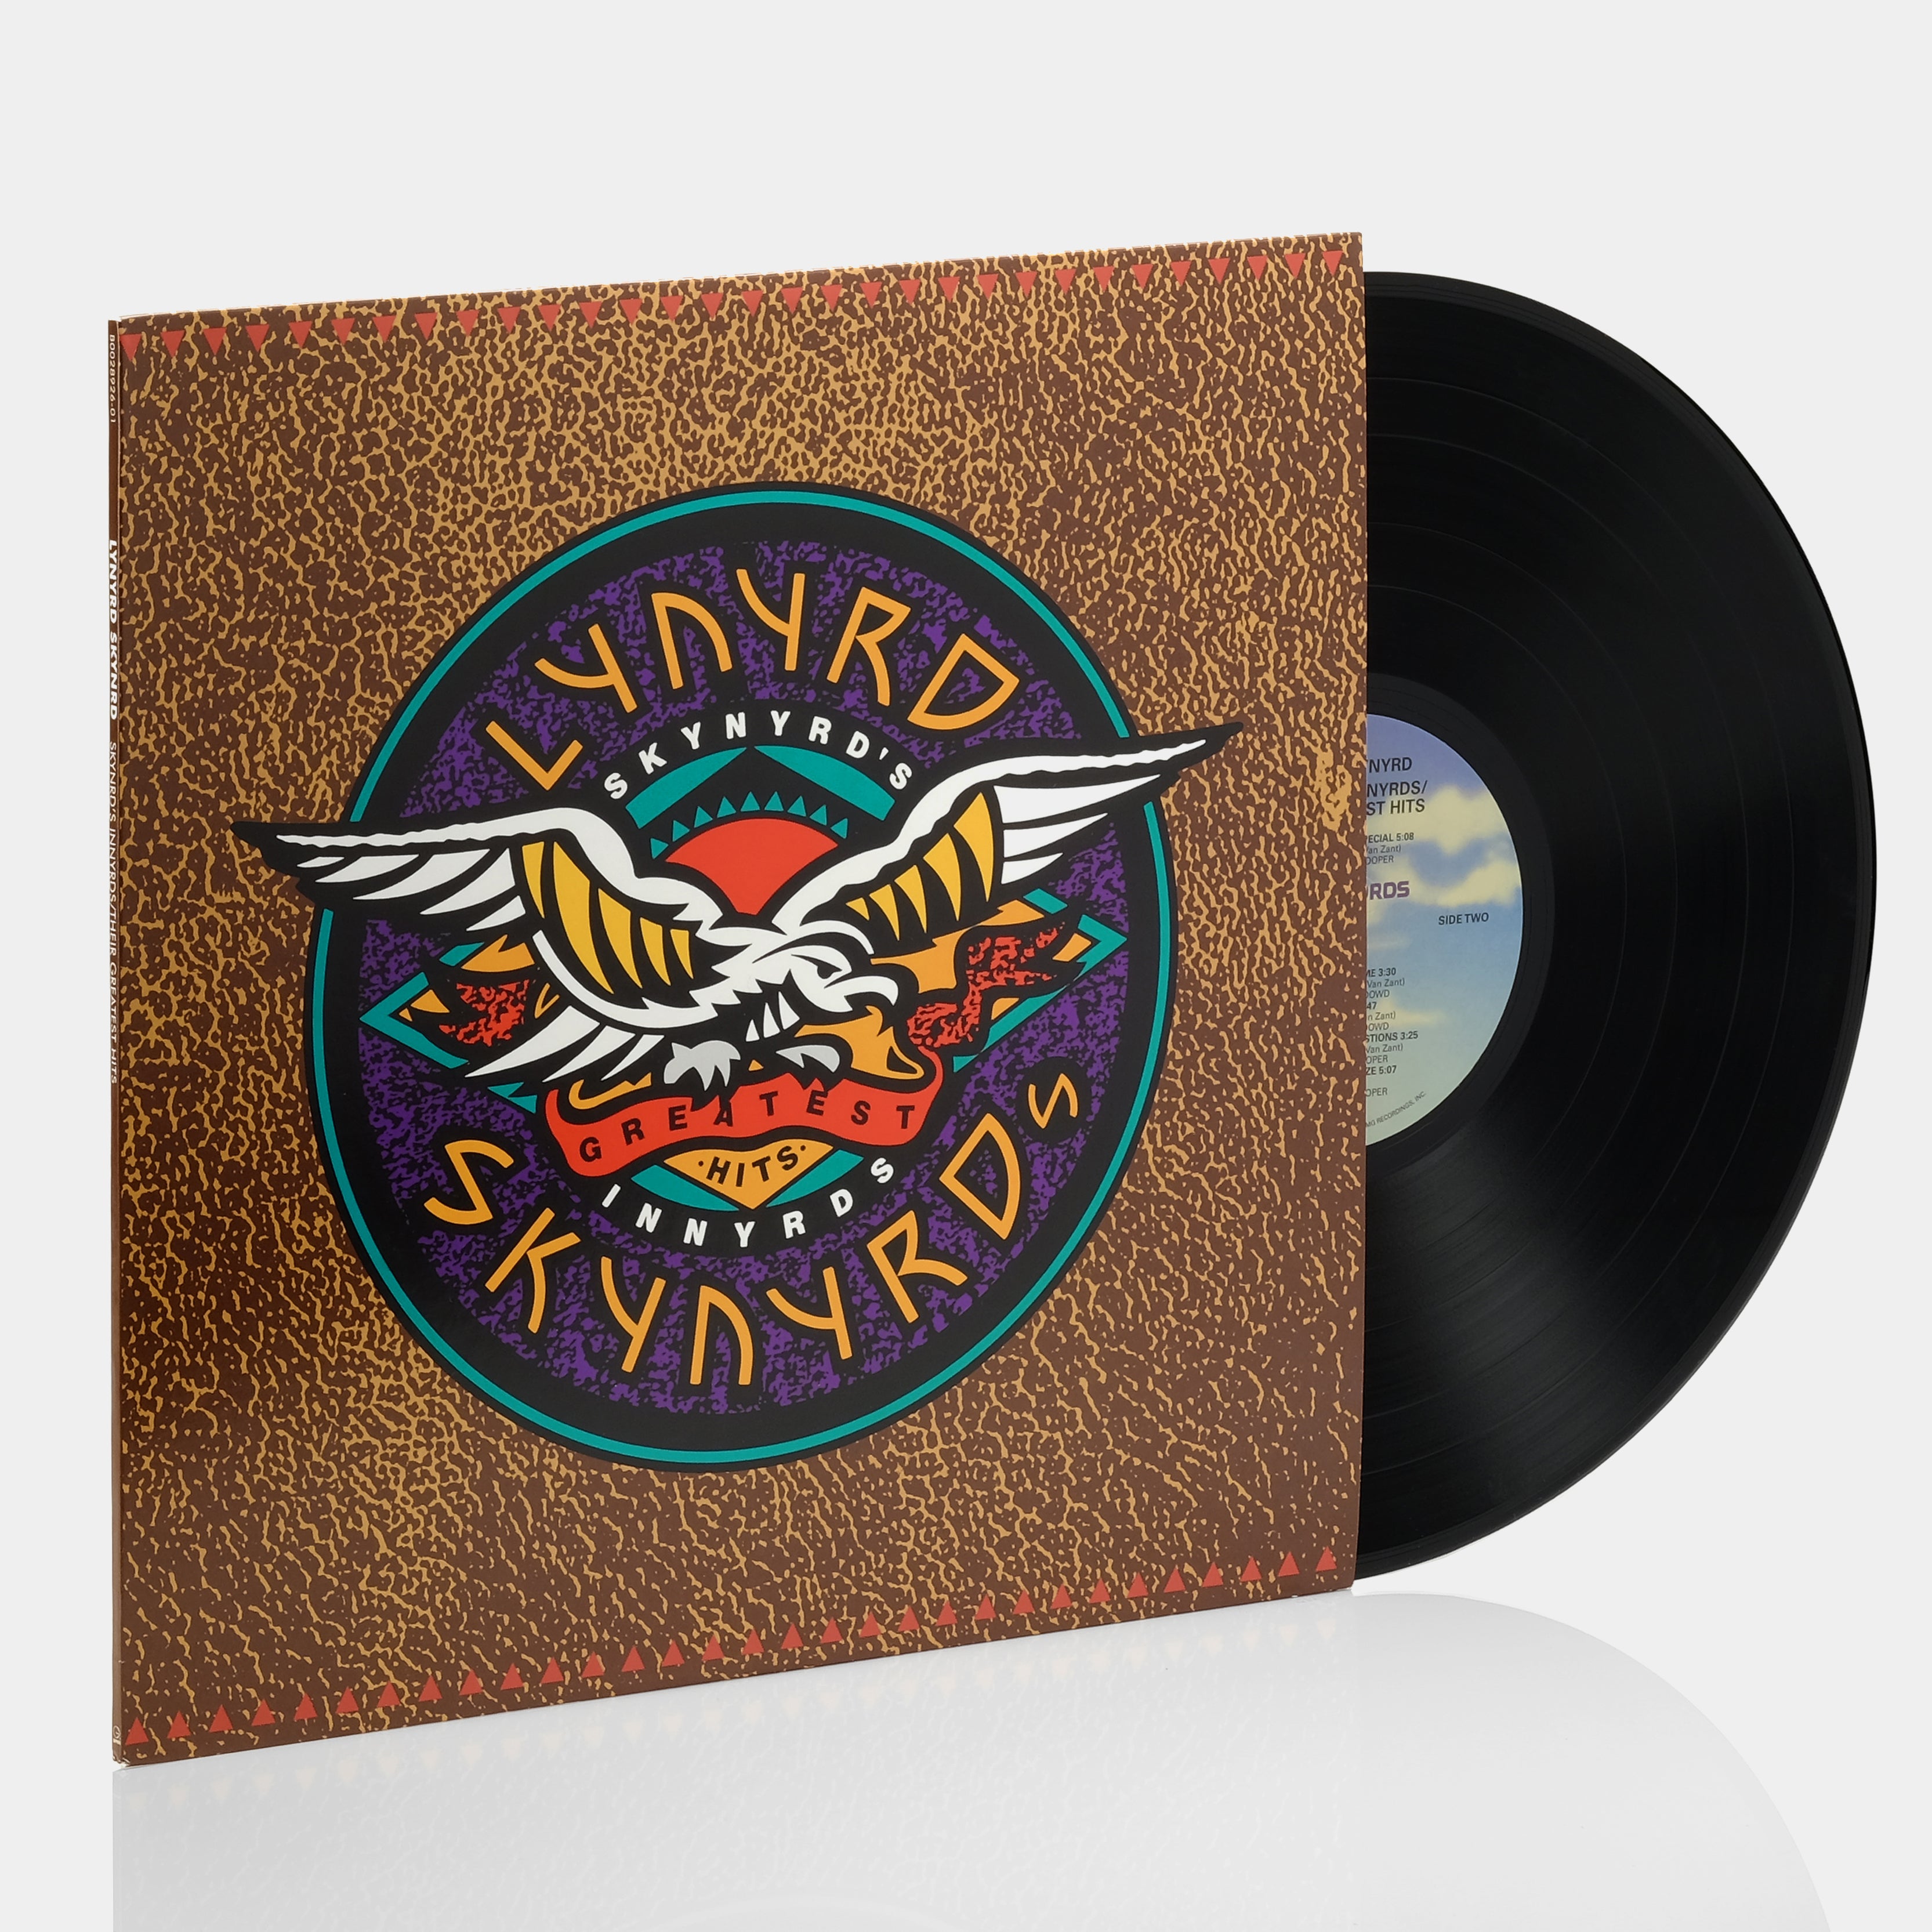 Lynyrd Skynyrd - Skynyrd's Innyrds Greatest Hits LP Vinyl Record